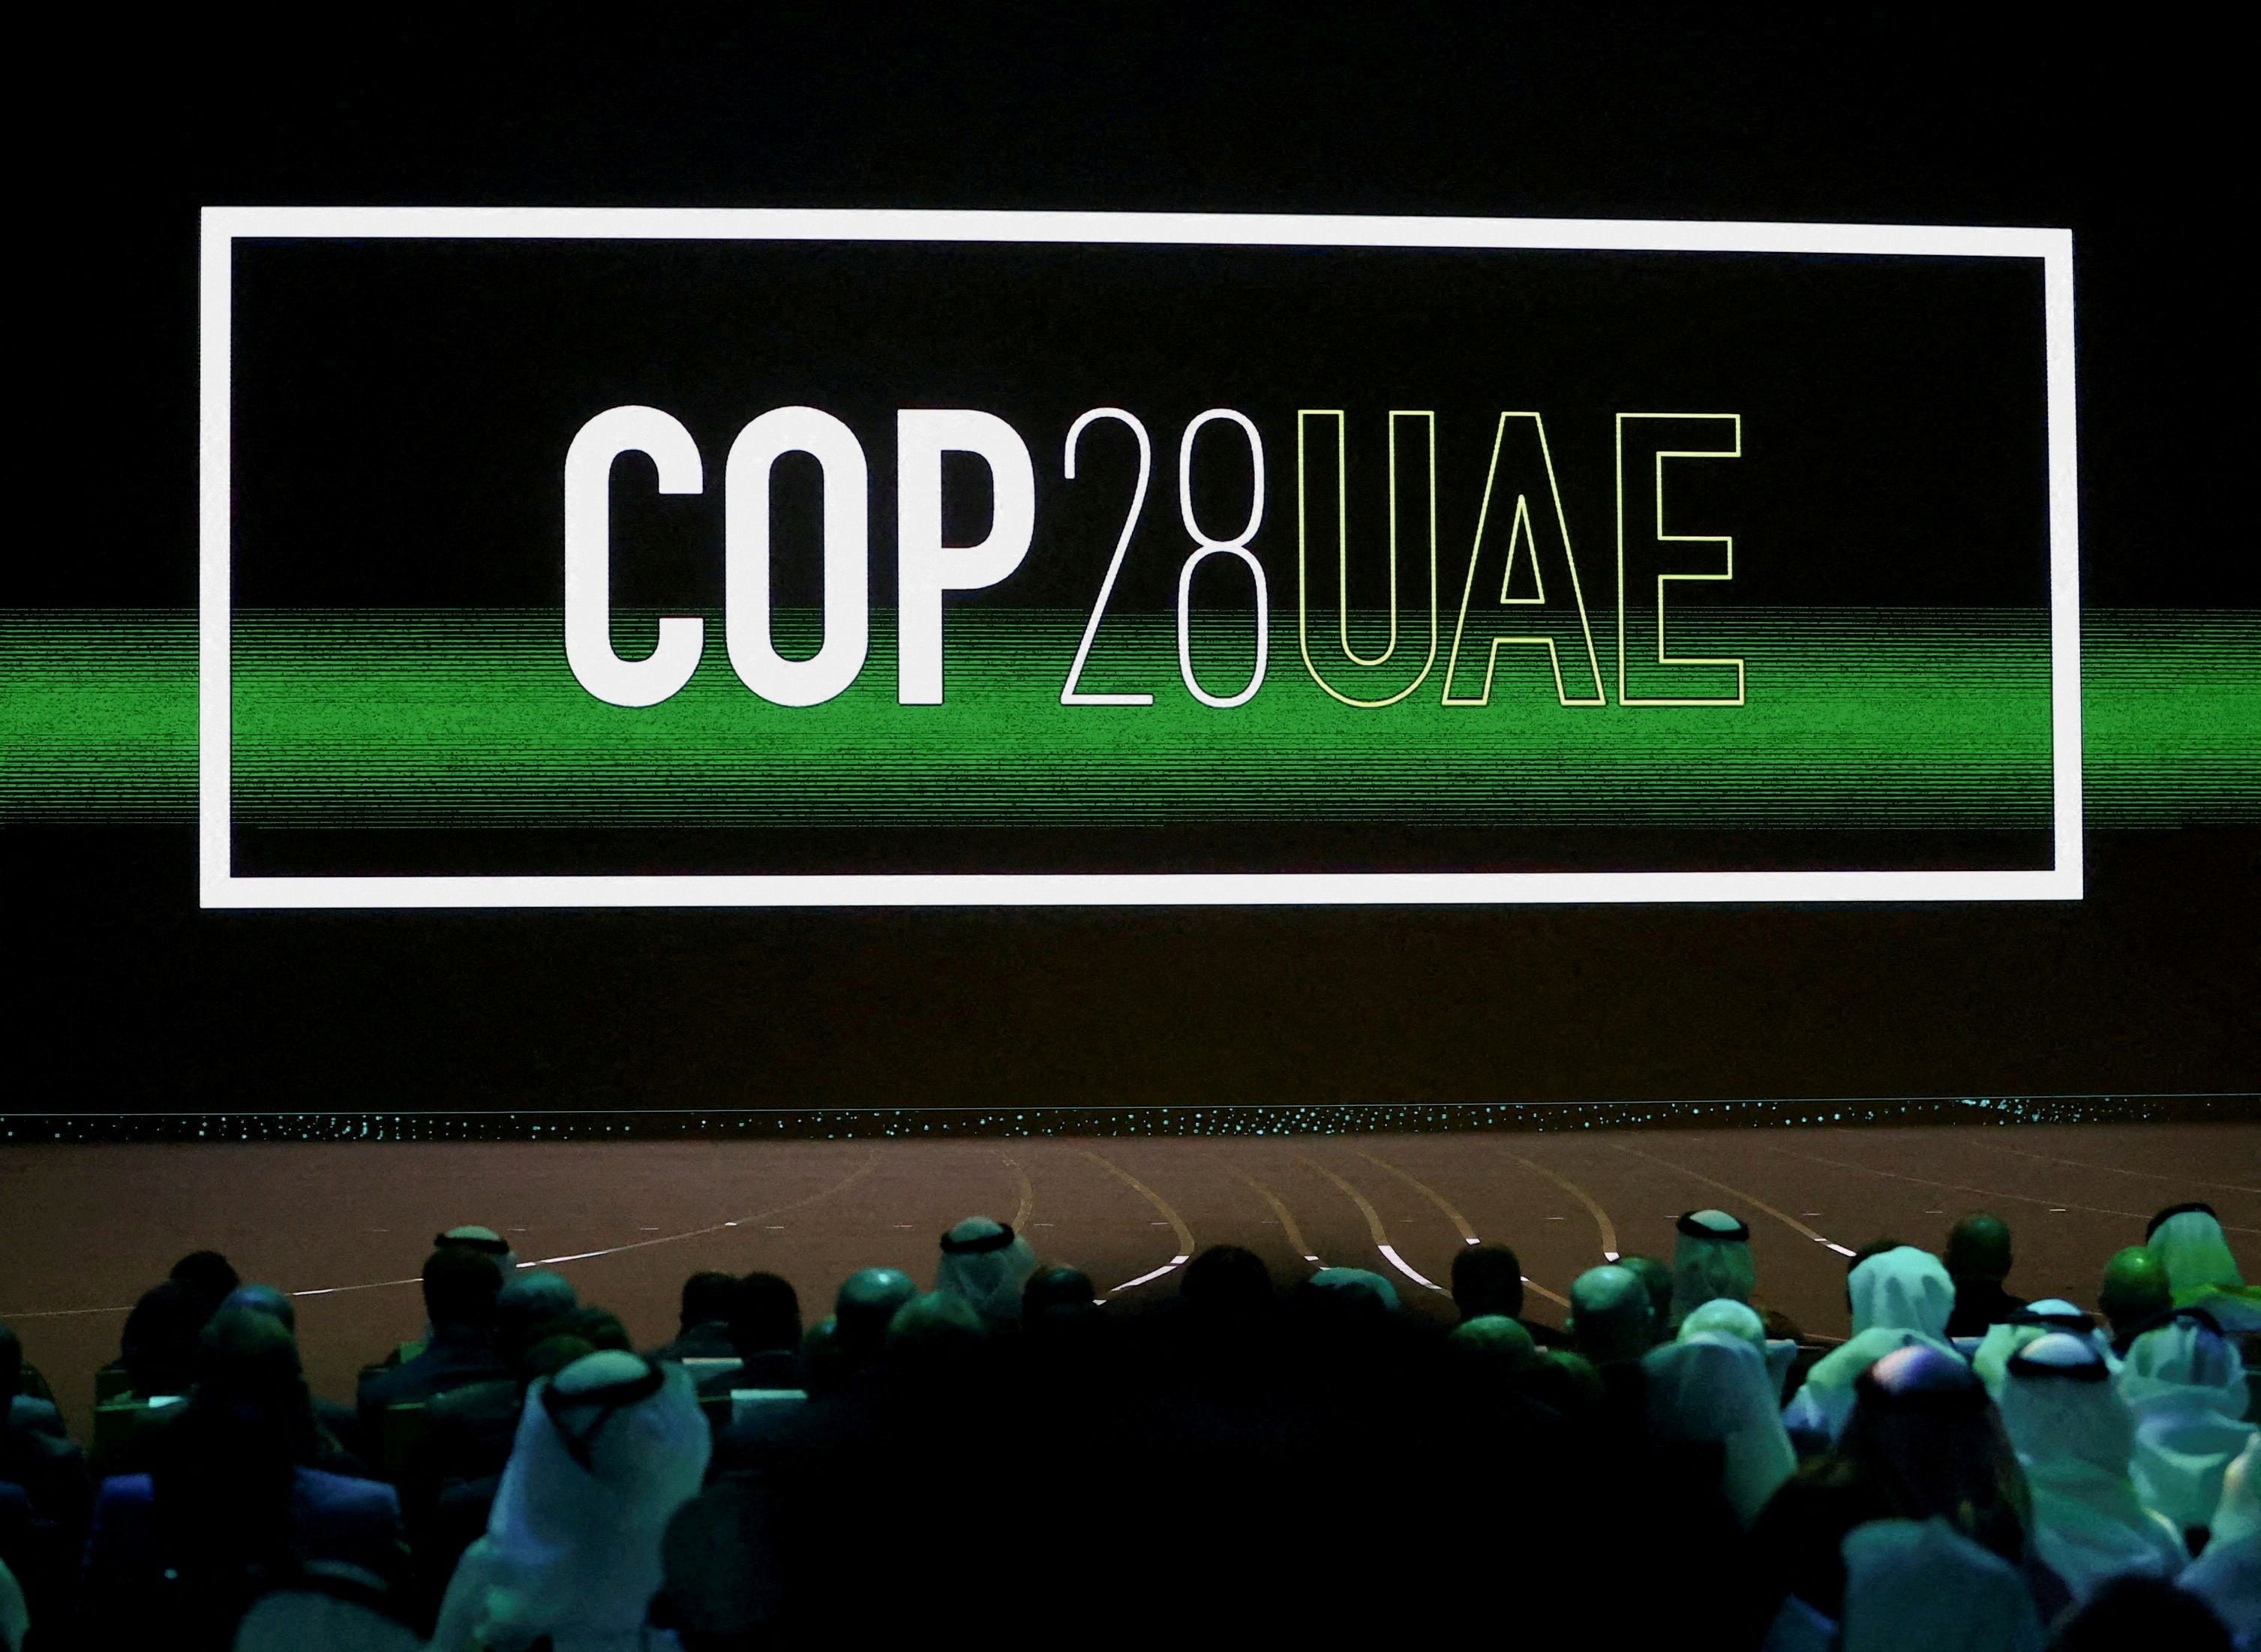 La COP28 es la reunión de casi 200 países, auspiciada por las Naciones Unidas que se hará en Emiratos Árabes para debatir formas de evitar el cambio climático provocado por los seres humanos ( REUTERS/Rula Rouhana)